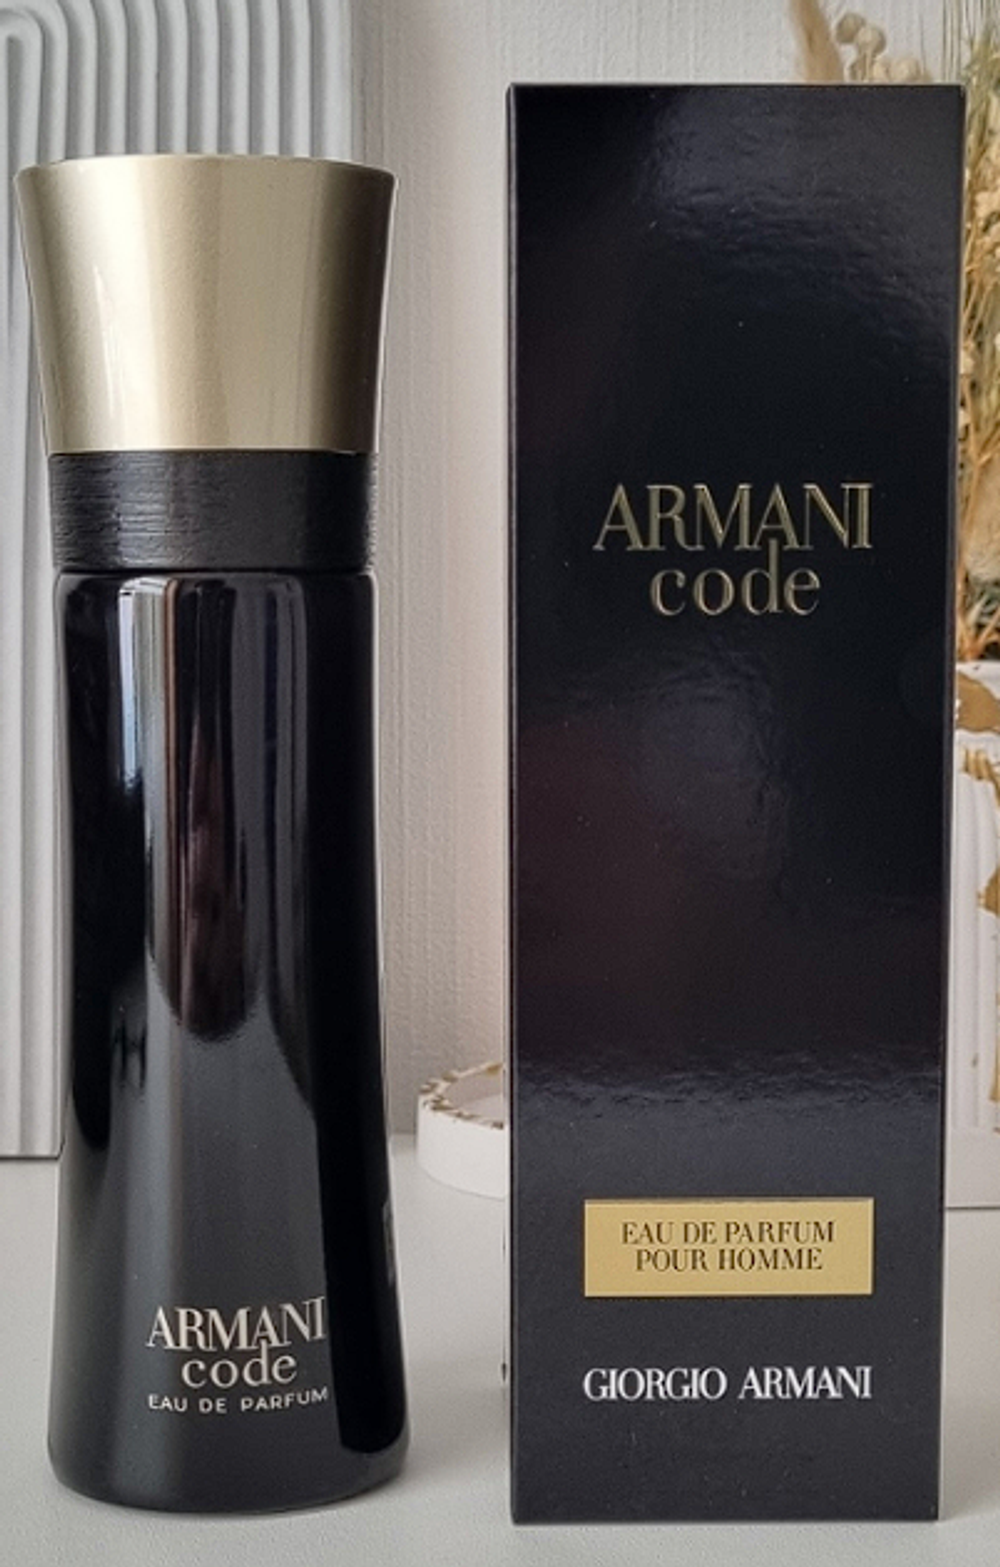 Armani Code Eau de Parfum Giorgio Armani 75ml (duty free парфюмерия)